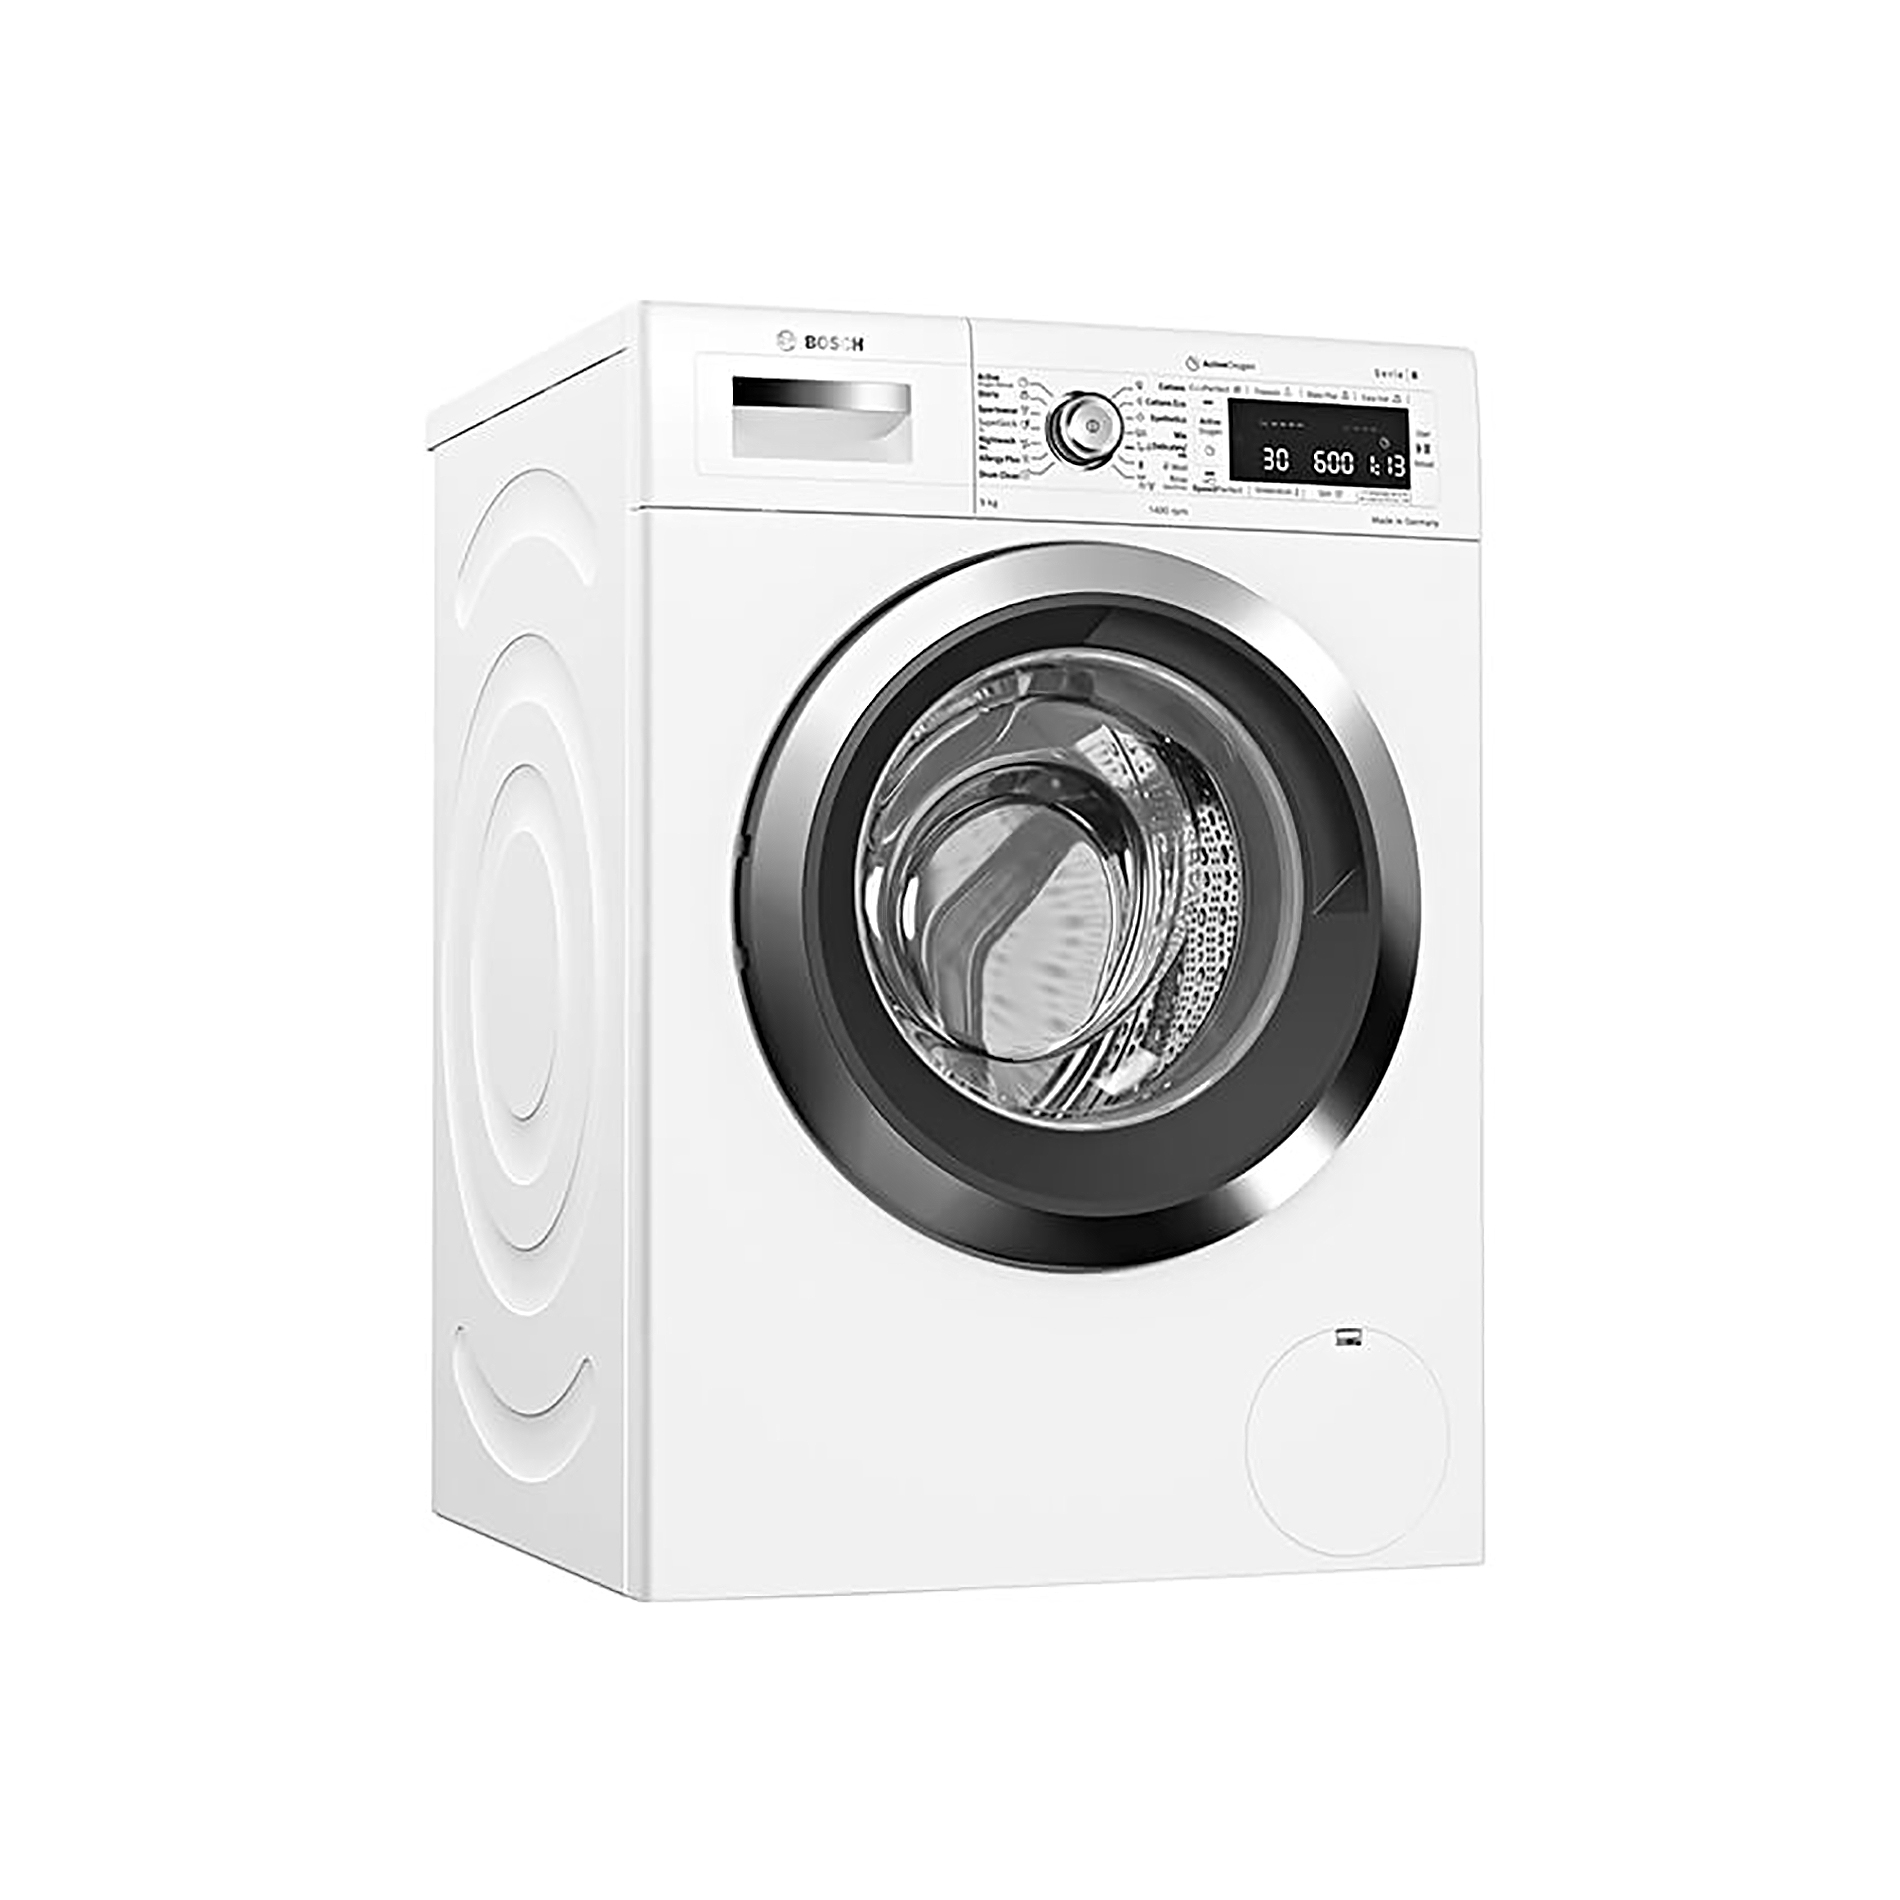 Máy Giặt 9KG BOSCH WAW28790HK - 9 chương trình giặt, Thêm đồ khi giặt, Inverter, Động cơ EcoSilence + Diệt khuẩn 99.9%